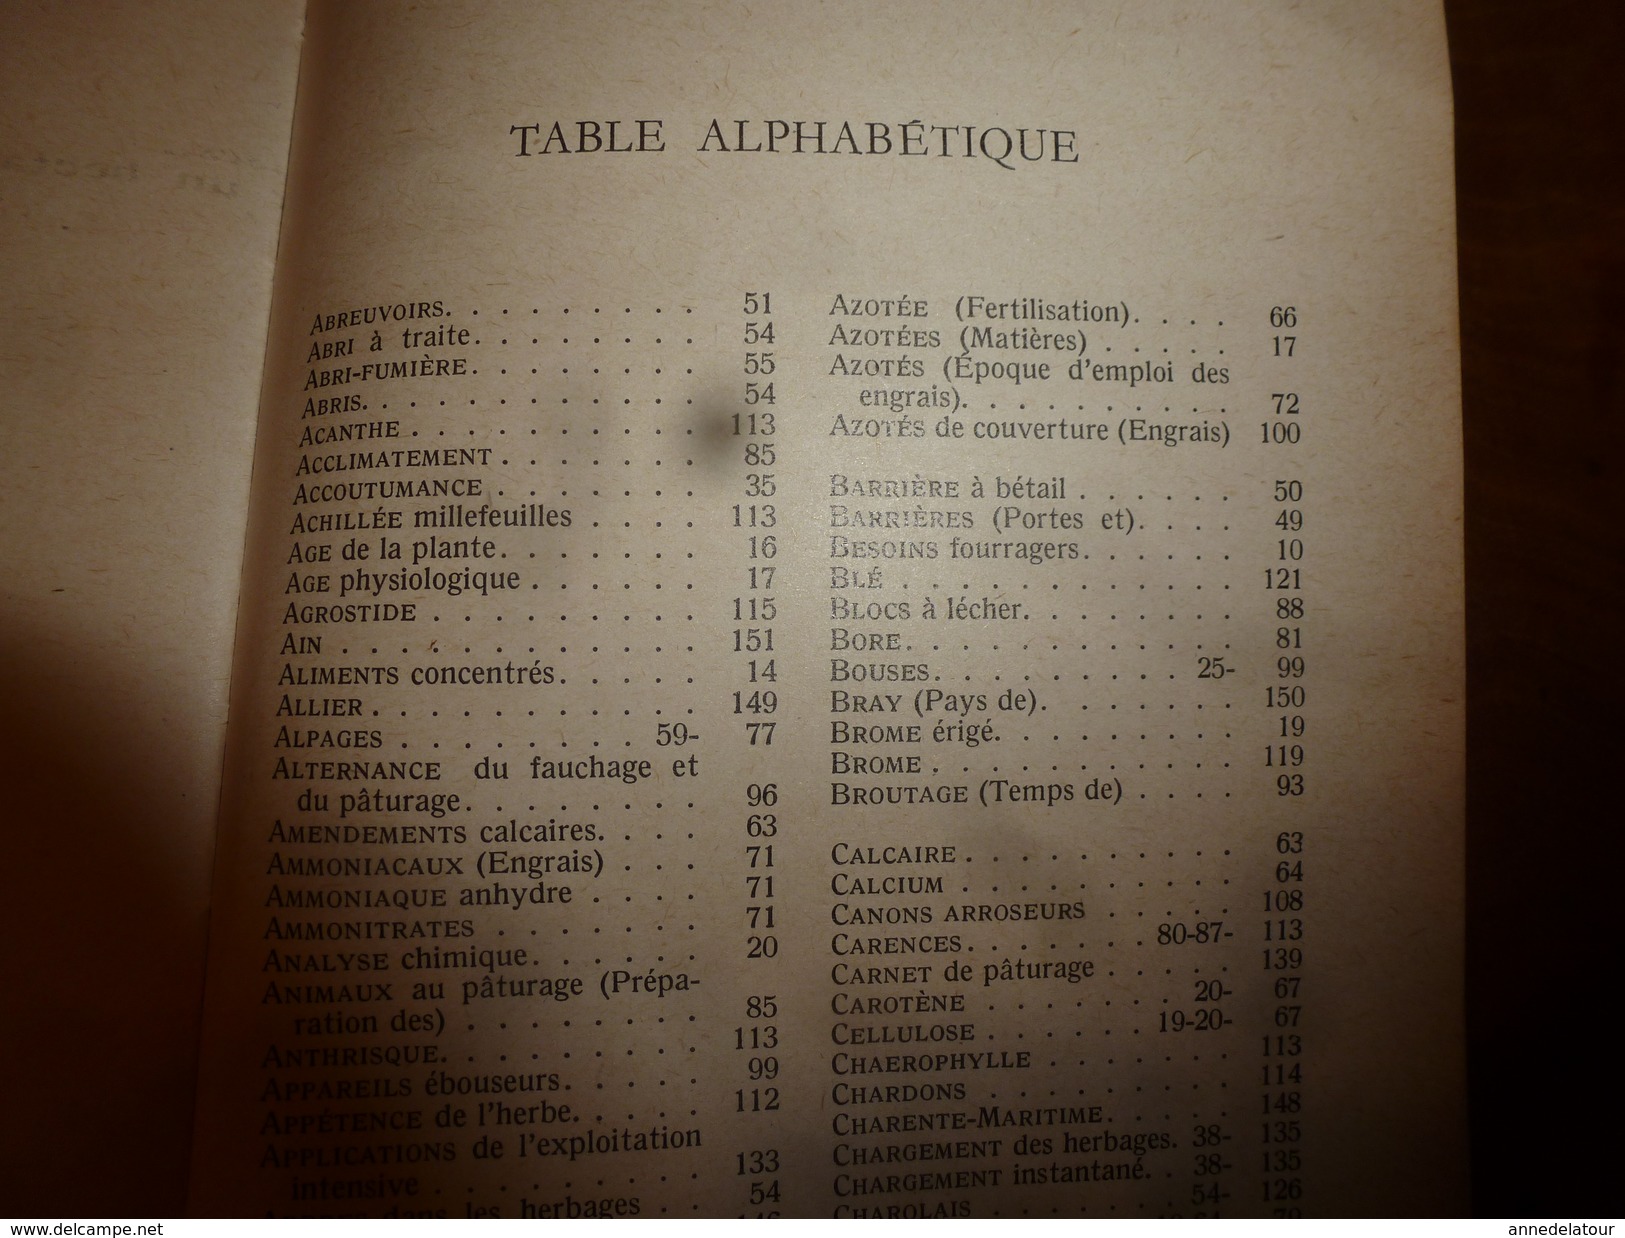 1954 Encyclopédie des connaissances agricoles (Exploitation intensive des prairies (herbages)